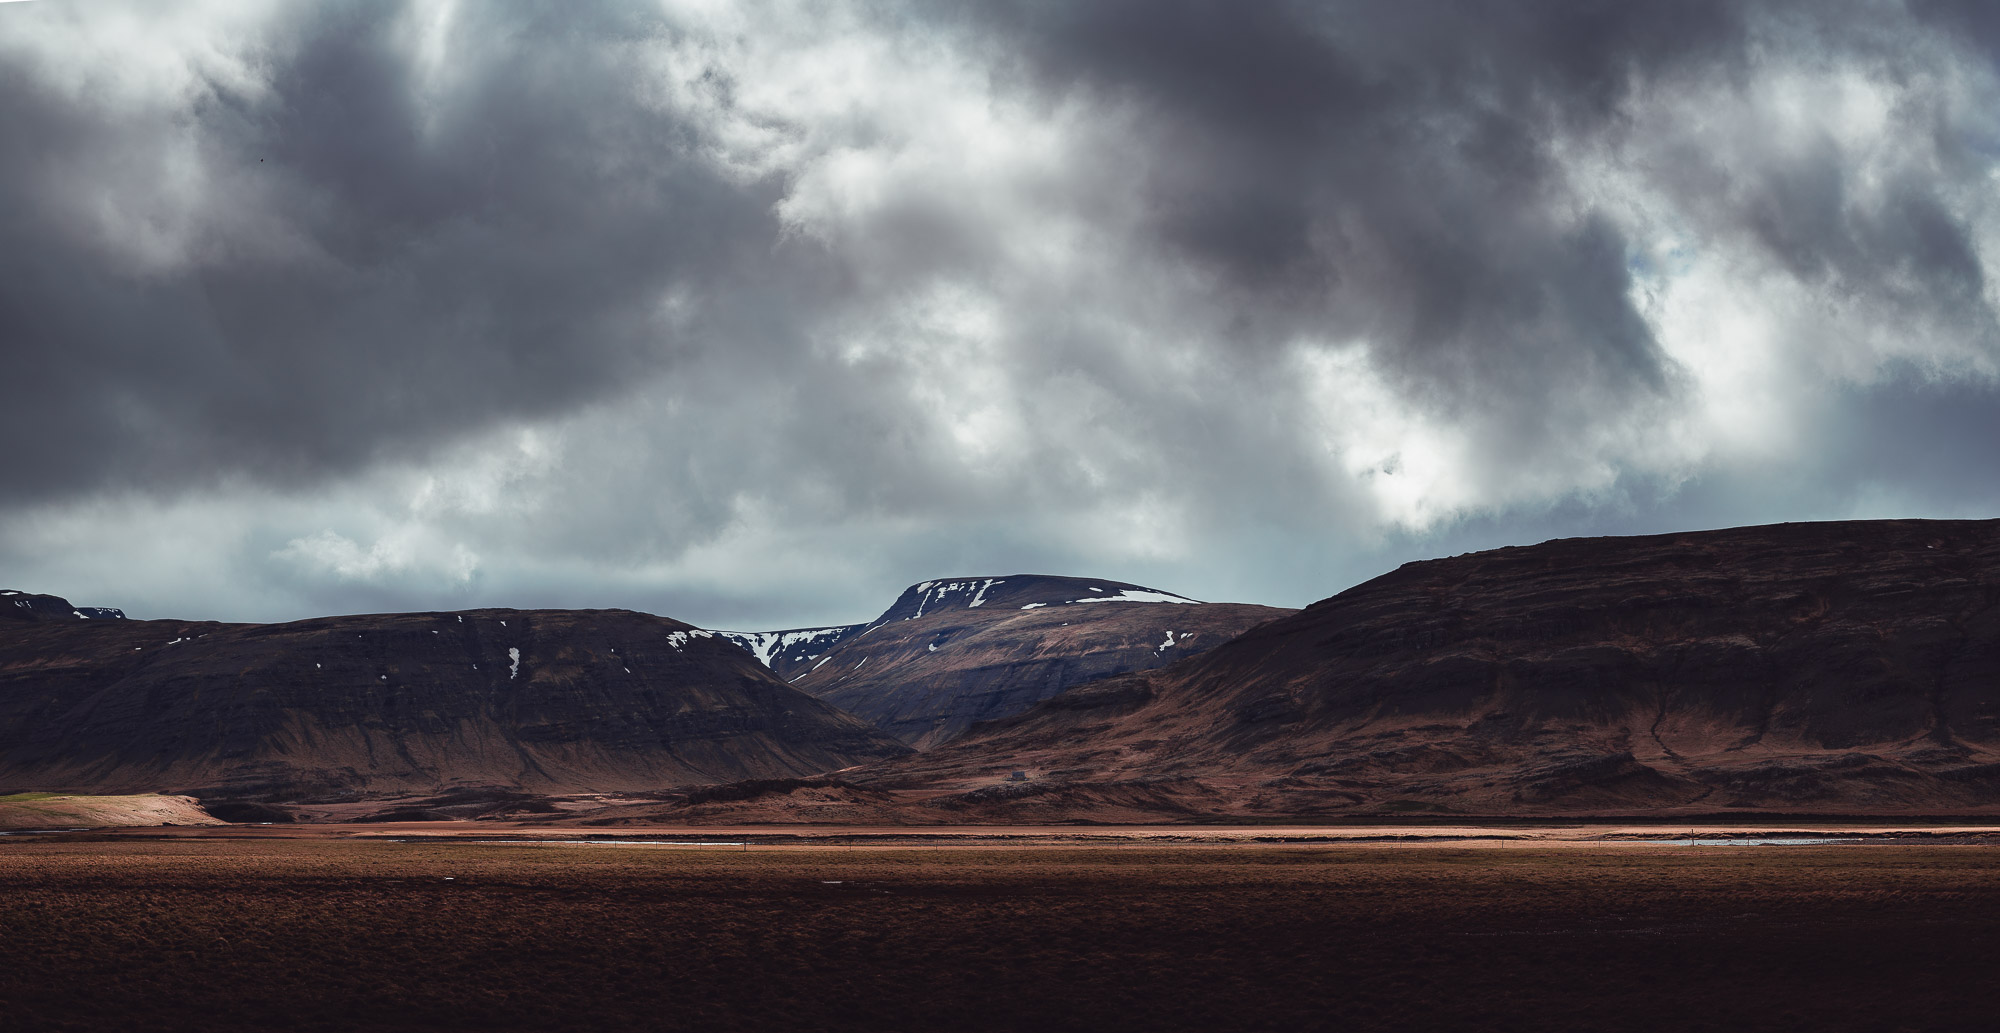 Kjósarskarðsvegur, Iceland. 12 frame panorama, 70 megapixels, Sigma 105mm f/1.4 @ f/5.6, 1/1250th, ISO 100